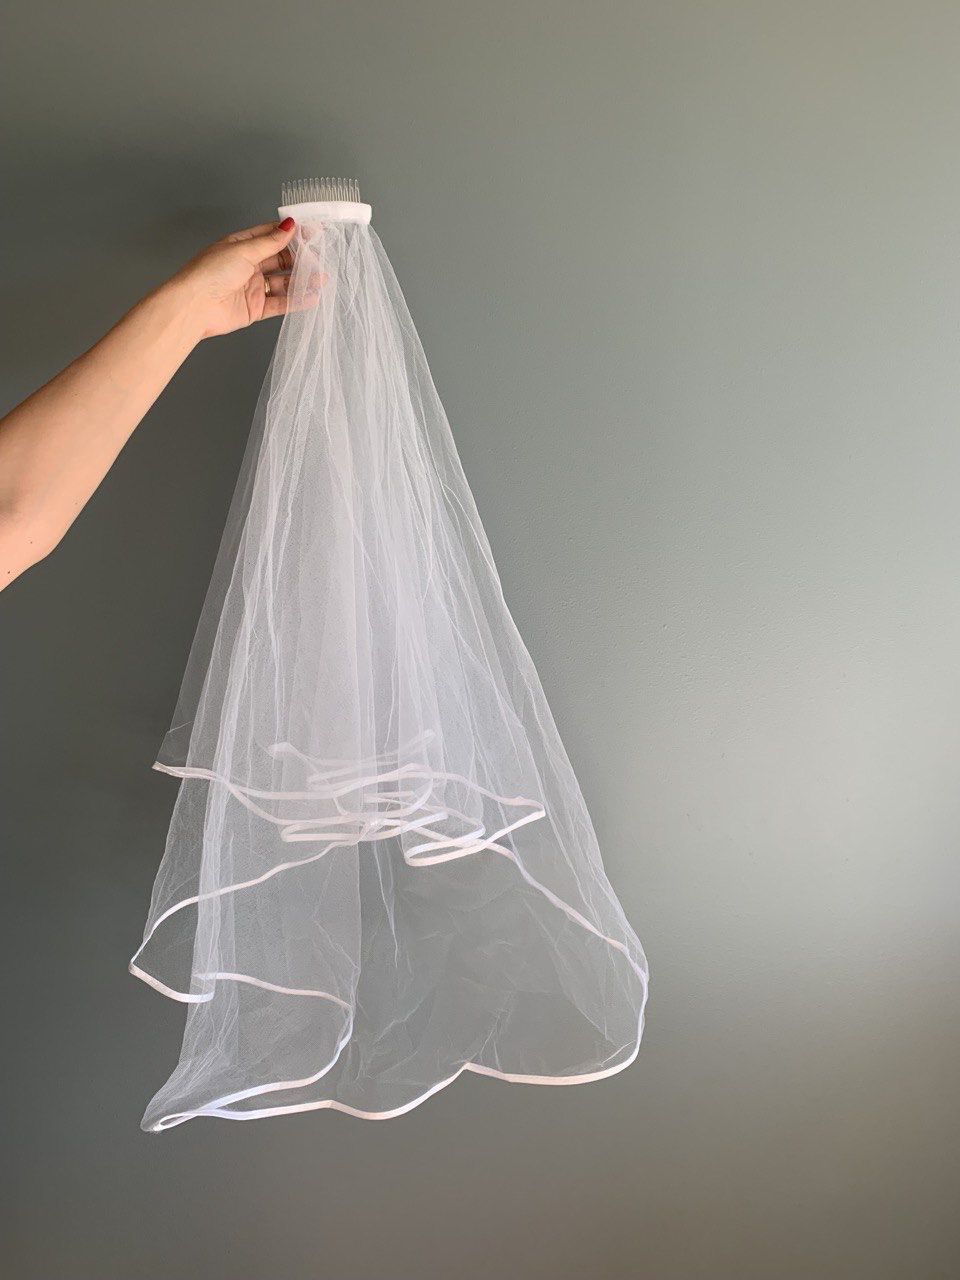 Japanese Bridal Veil